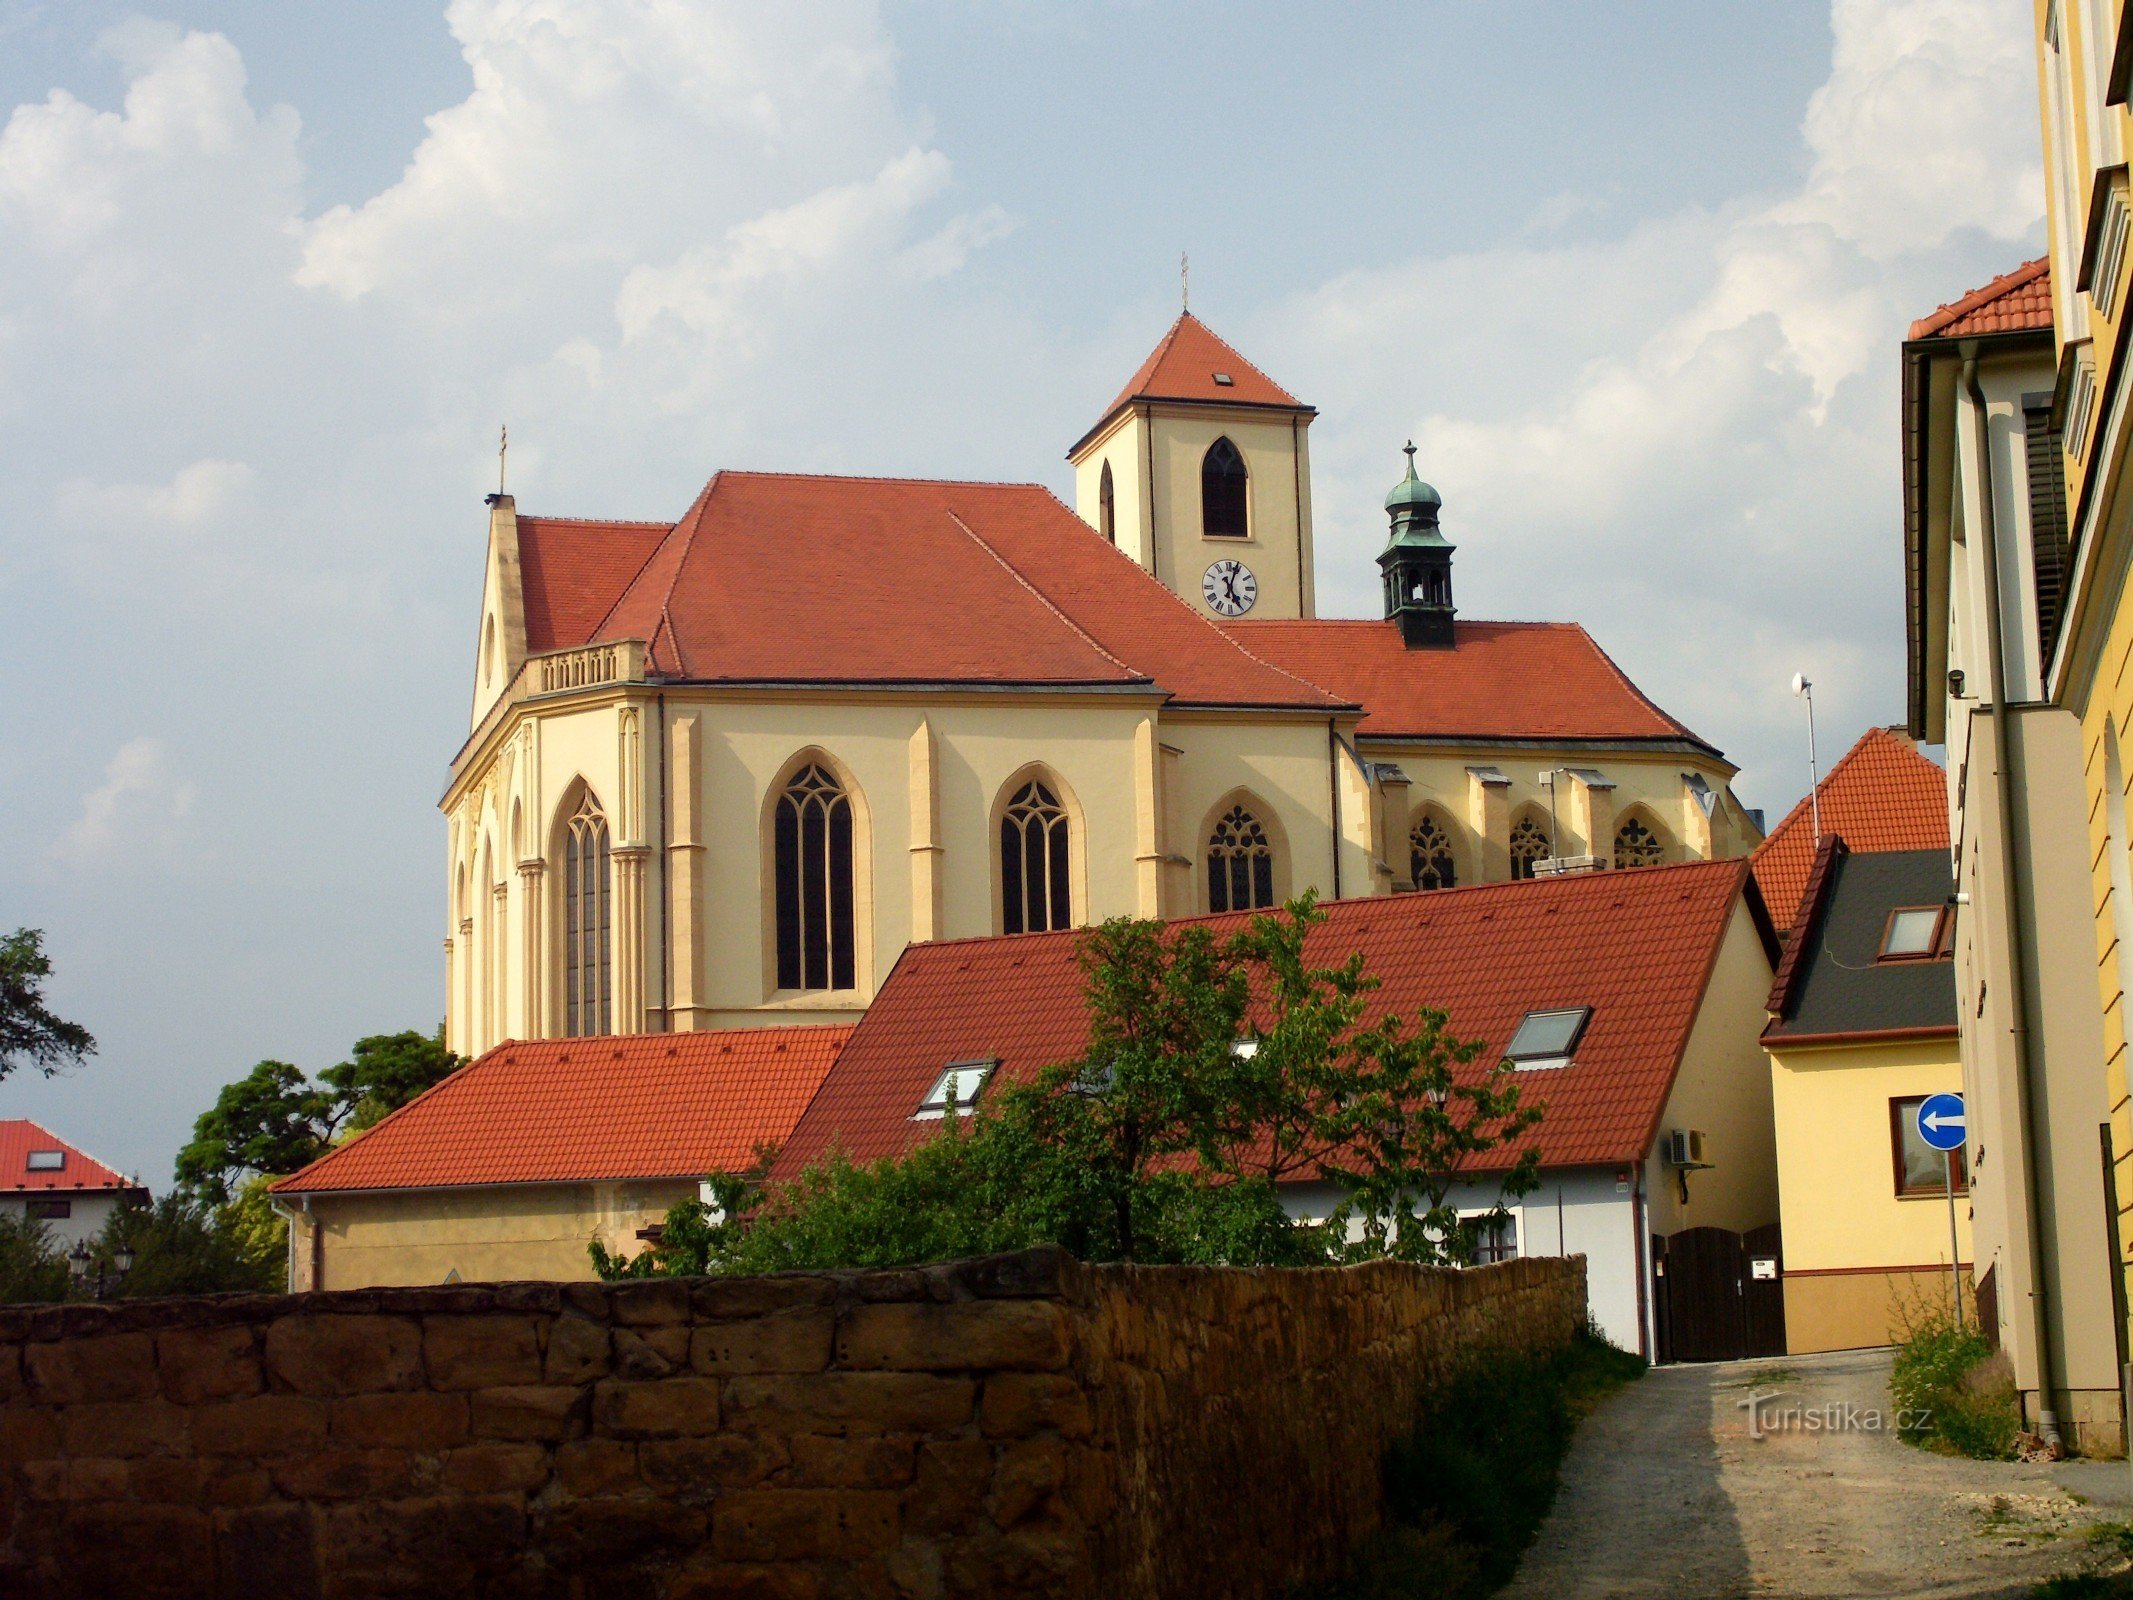 ボスコヴィツェ - 聖ヤクブ長老教会